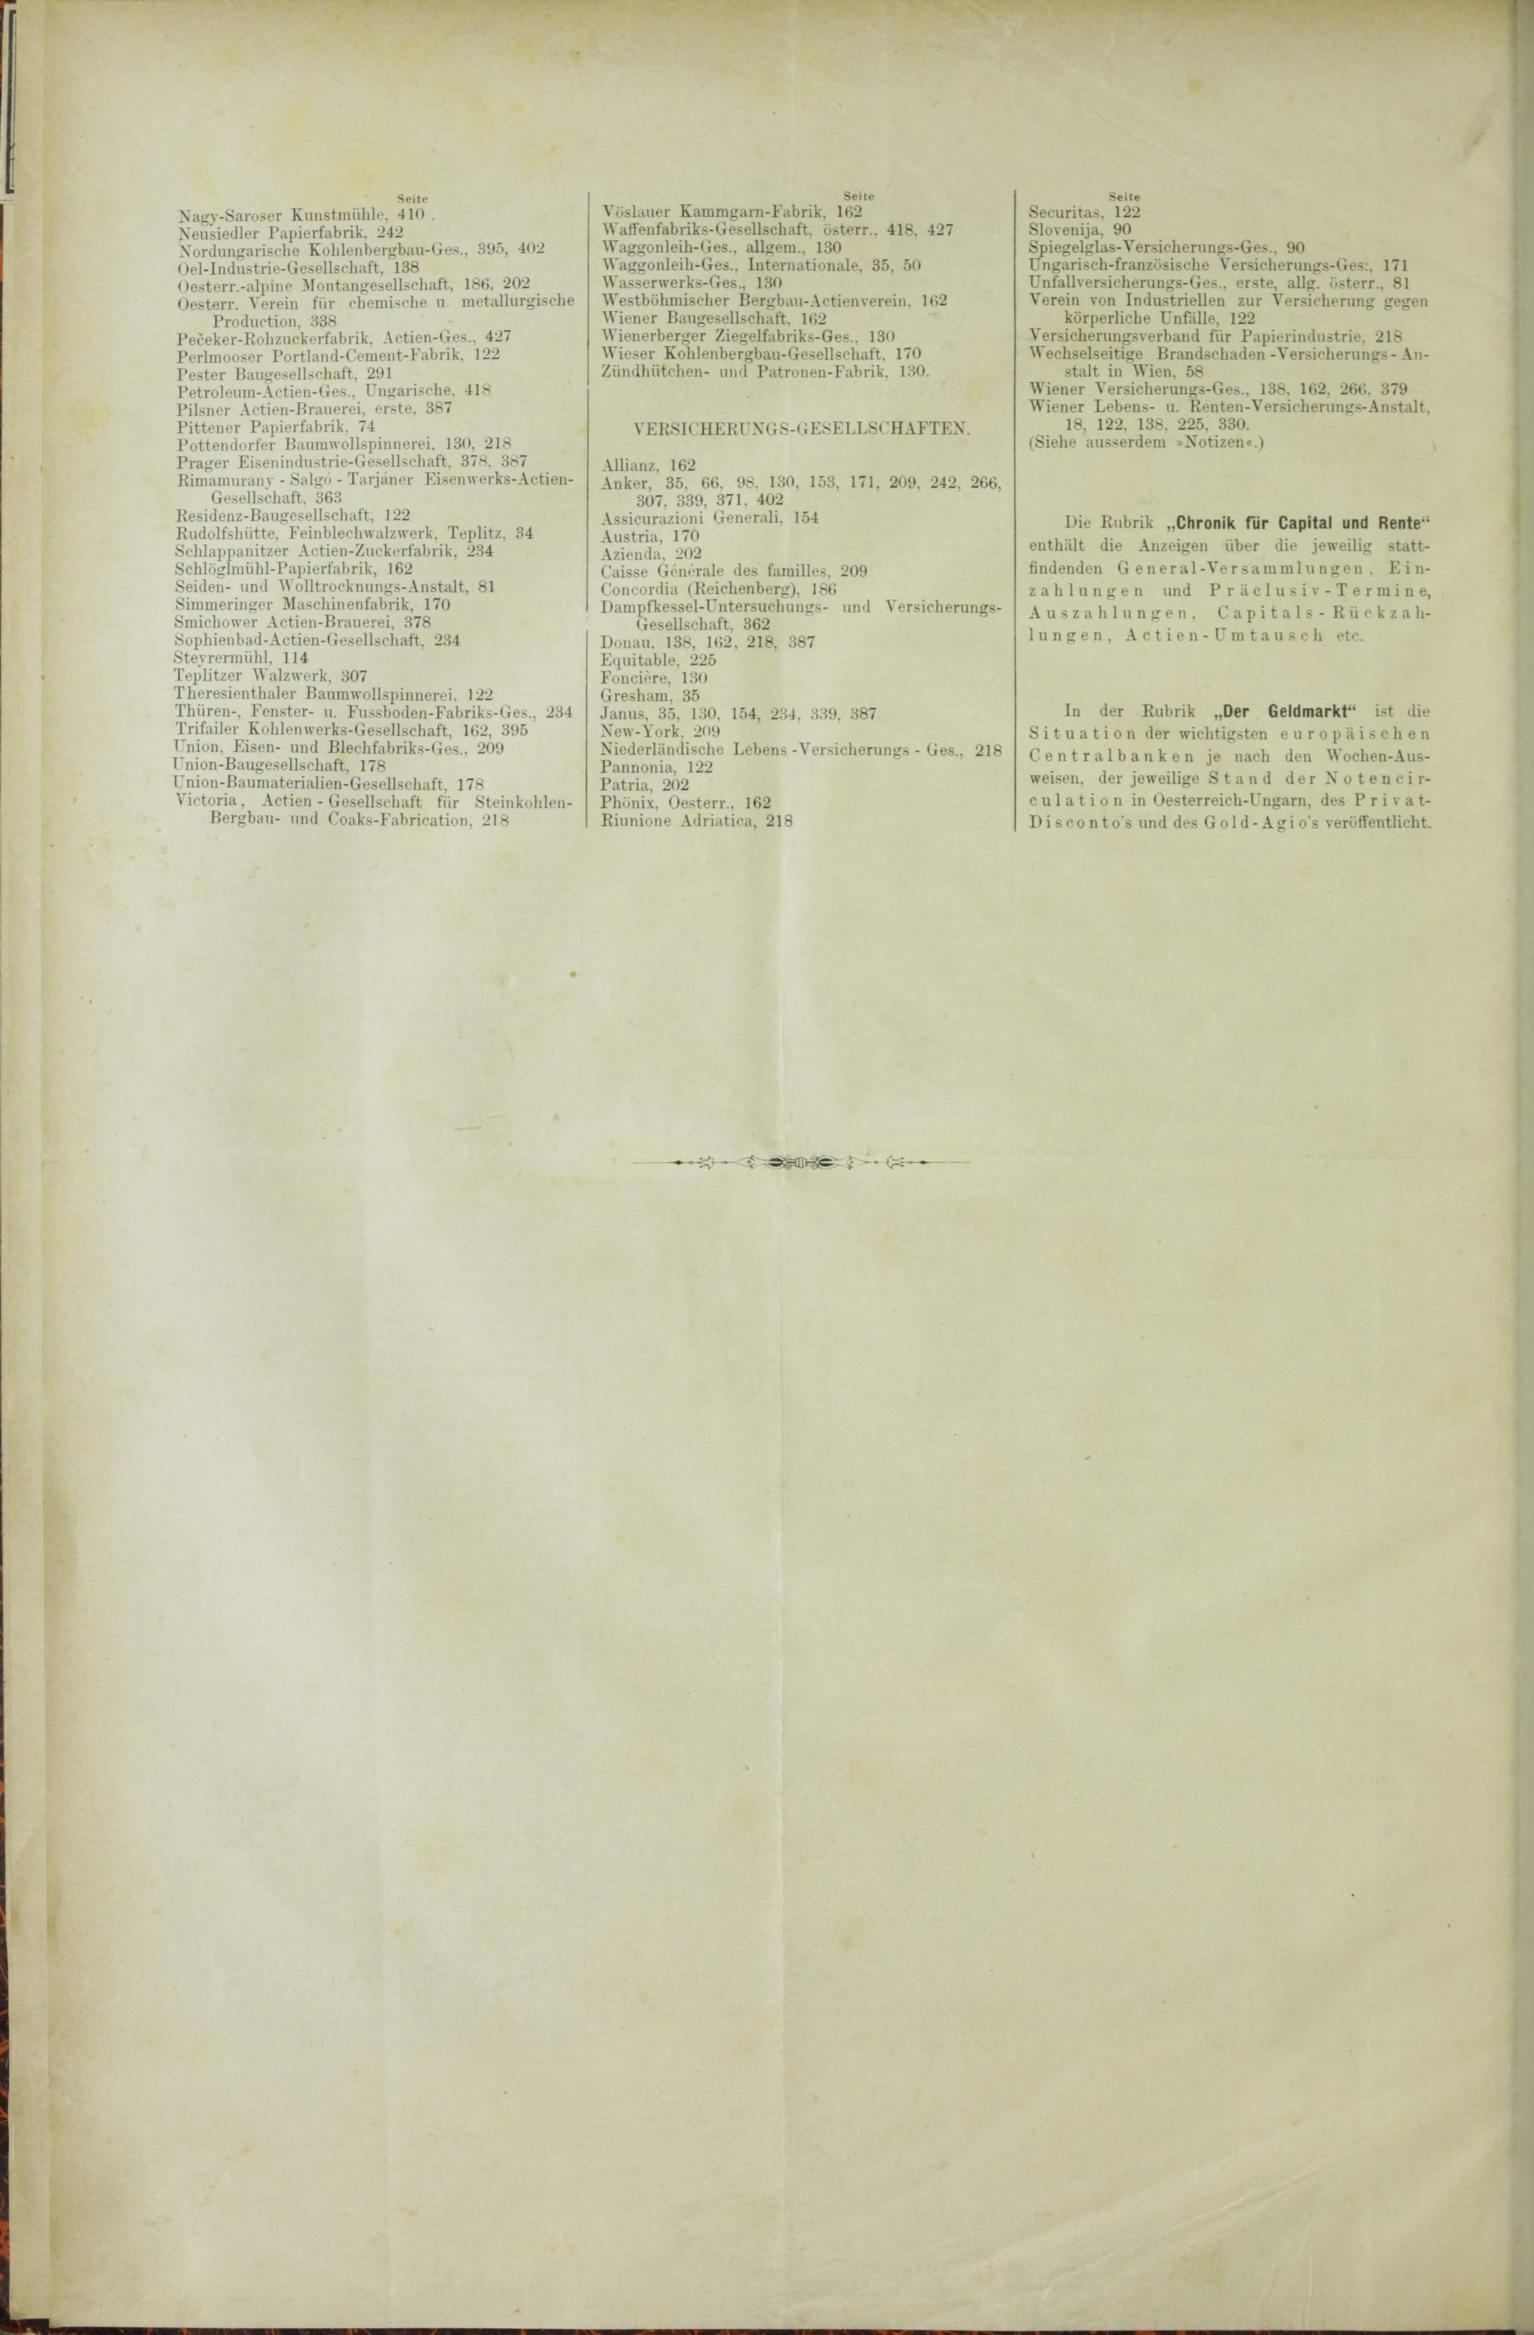 Der Tresor 18.06.1885 - Seite 12